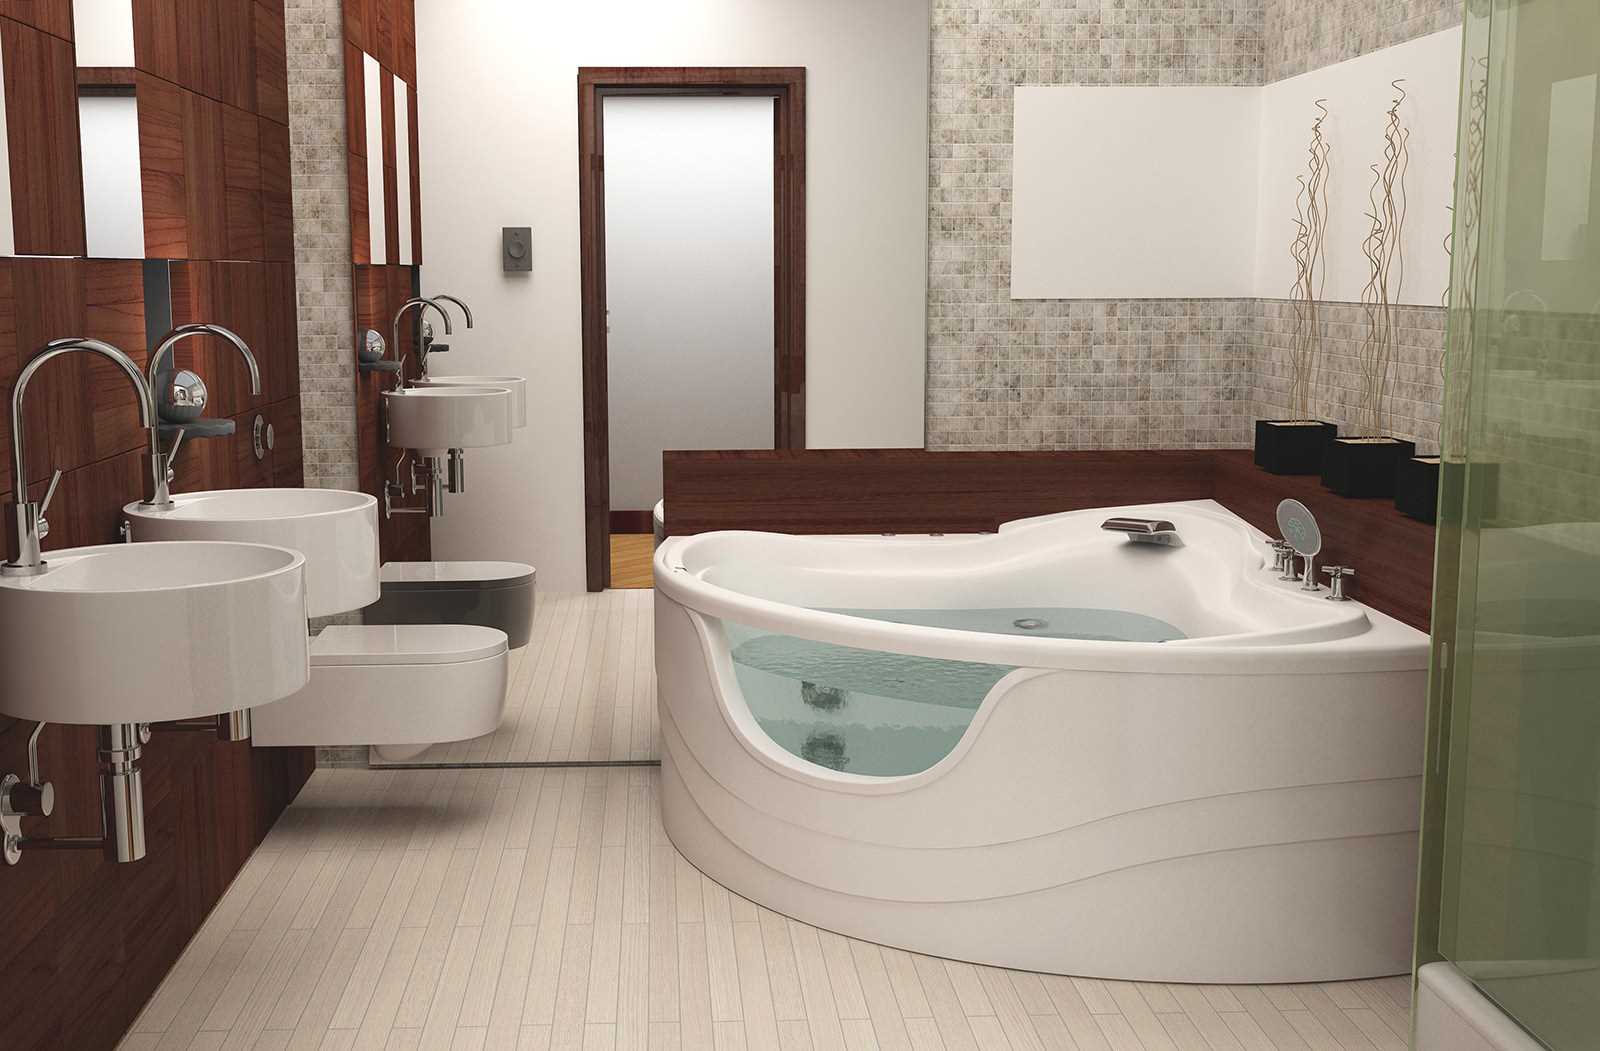 version du bel intérieur de la salle de bain avec baignoire d'angle